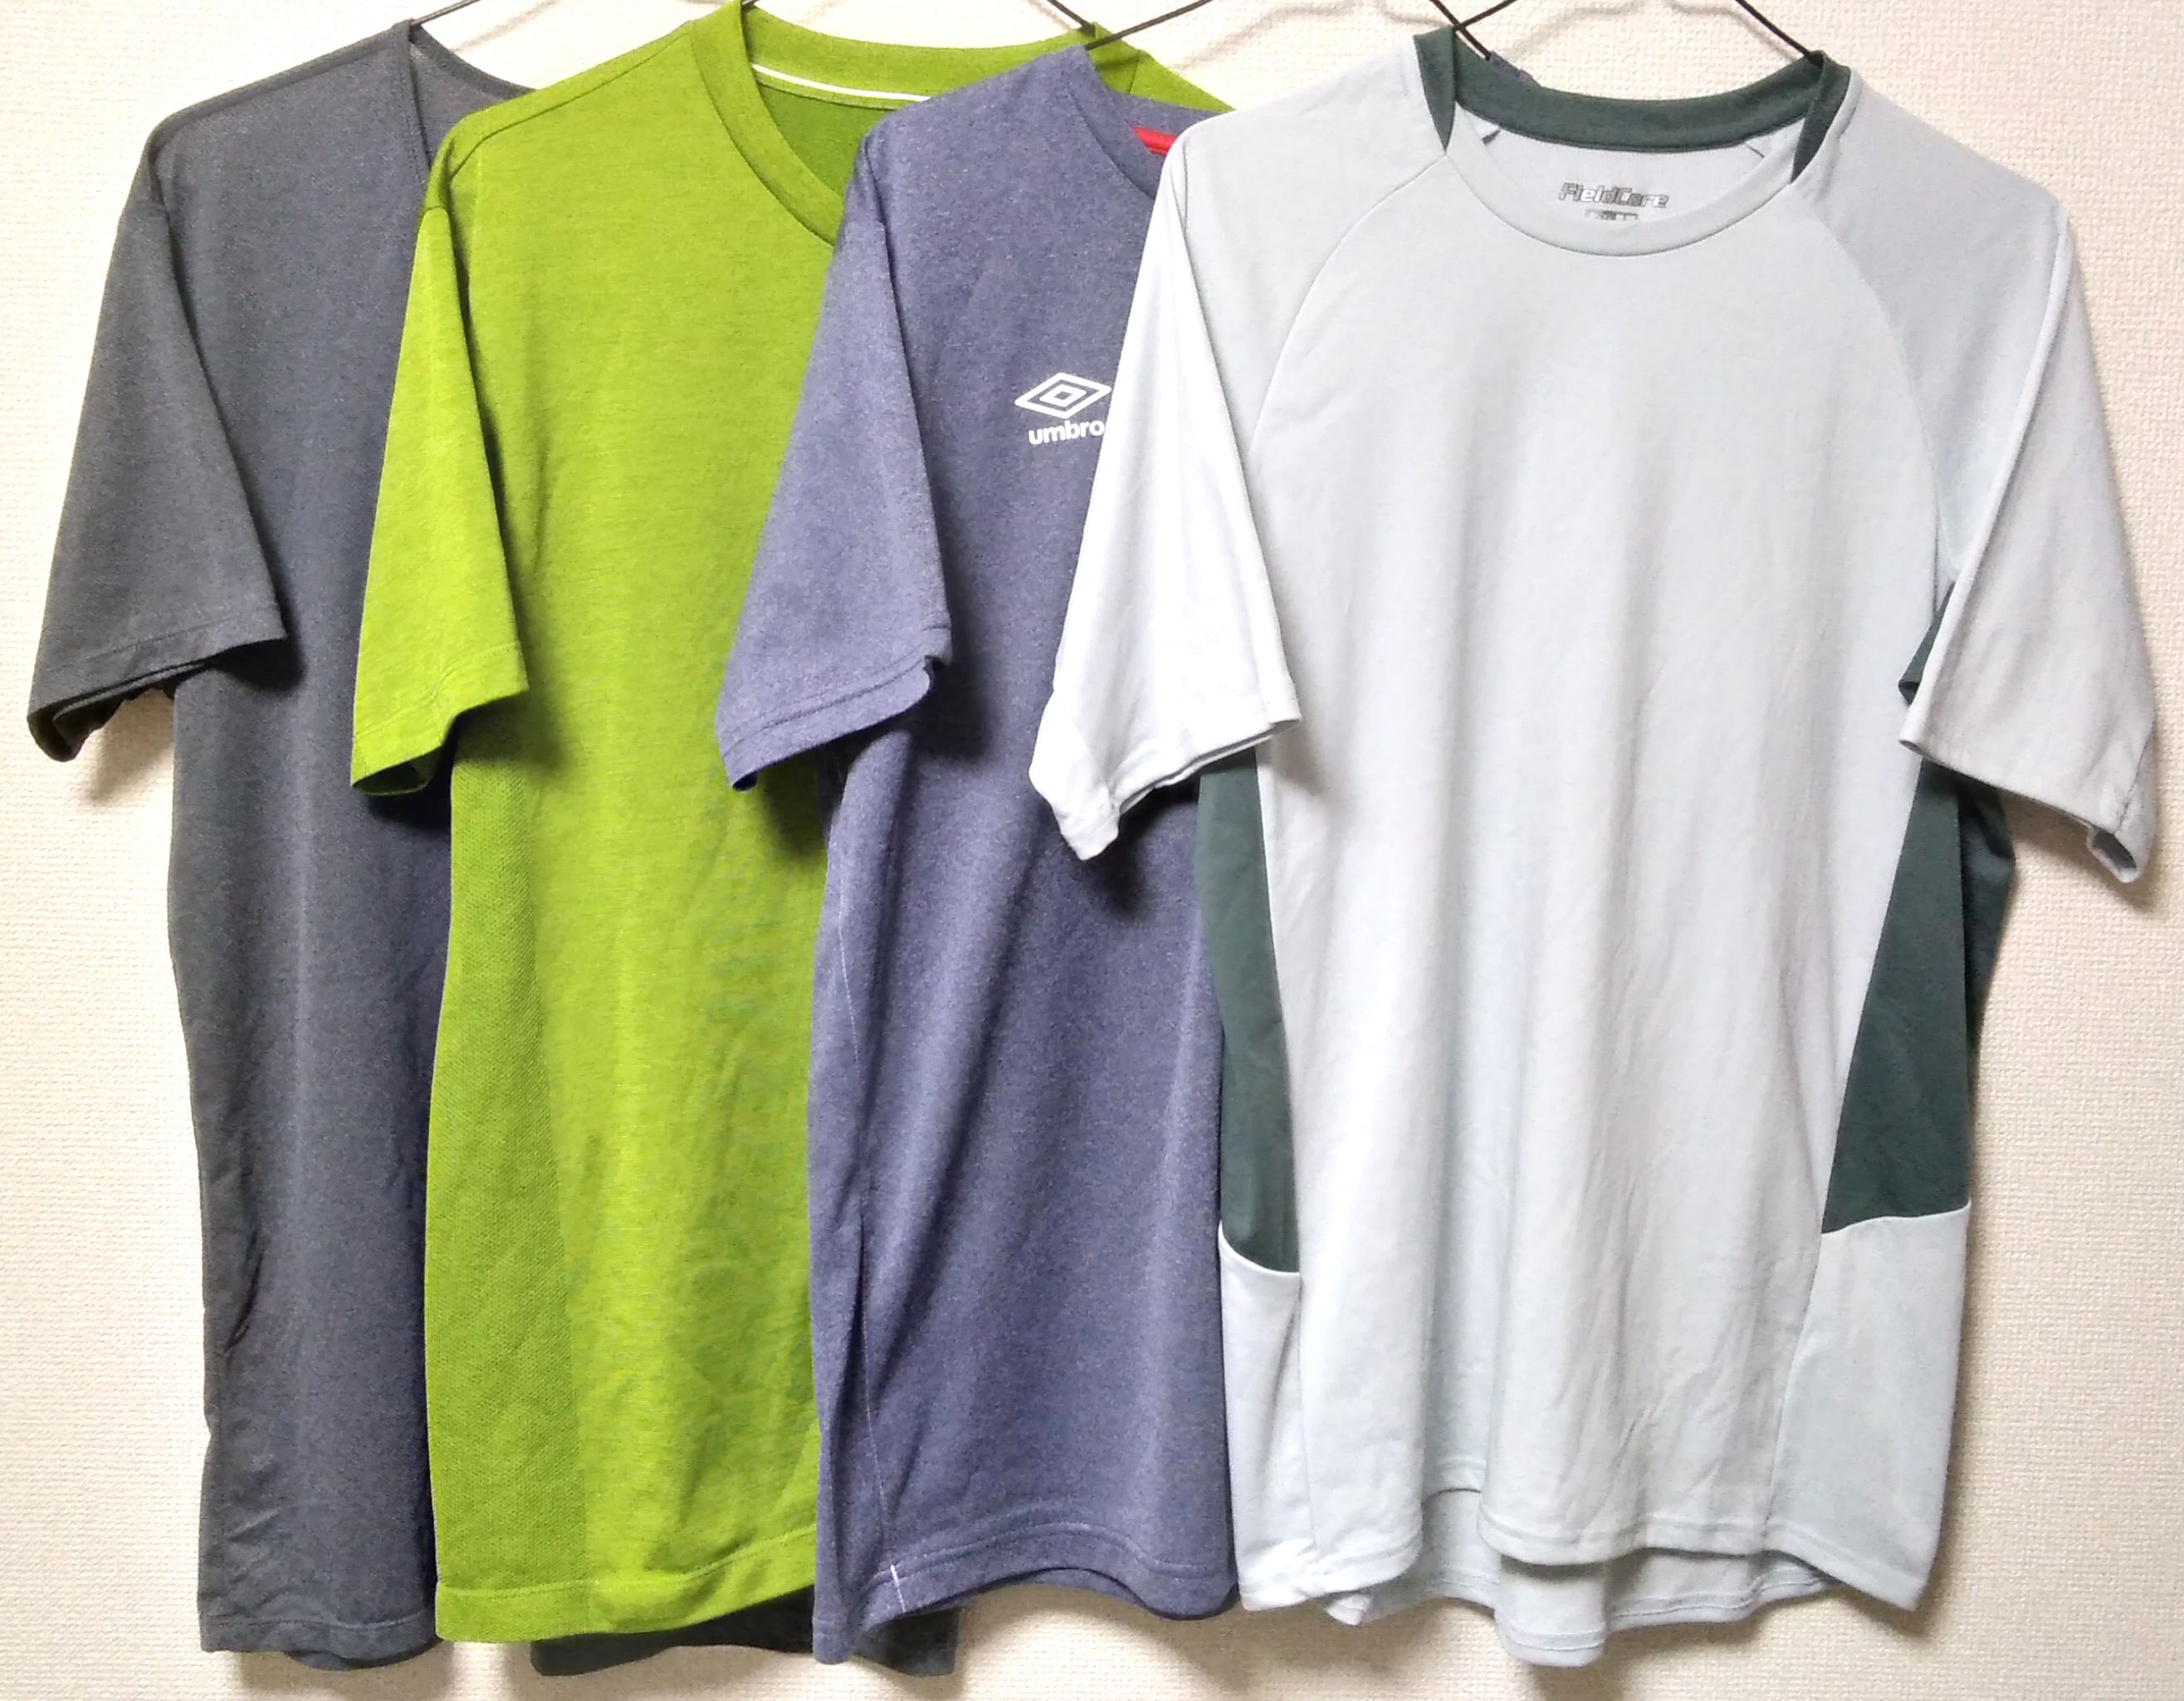 ワークマン Zero Dry Tシャツは吸汗速乾で登山におすすめ 休日充実化計画